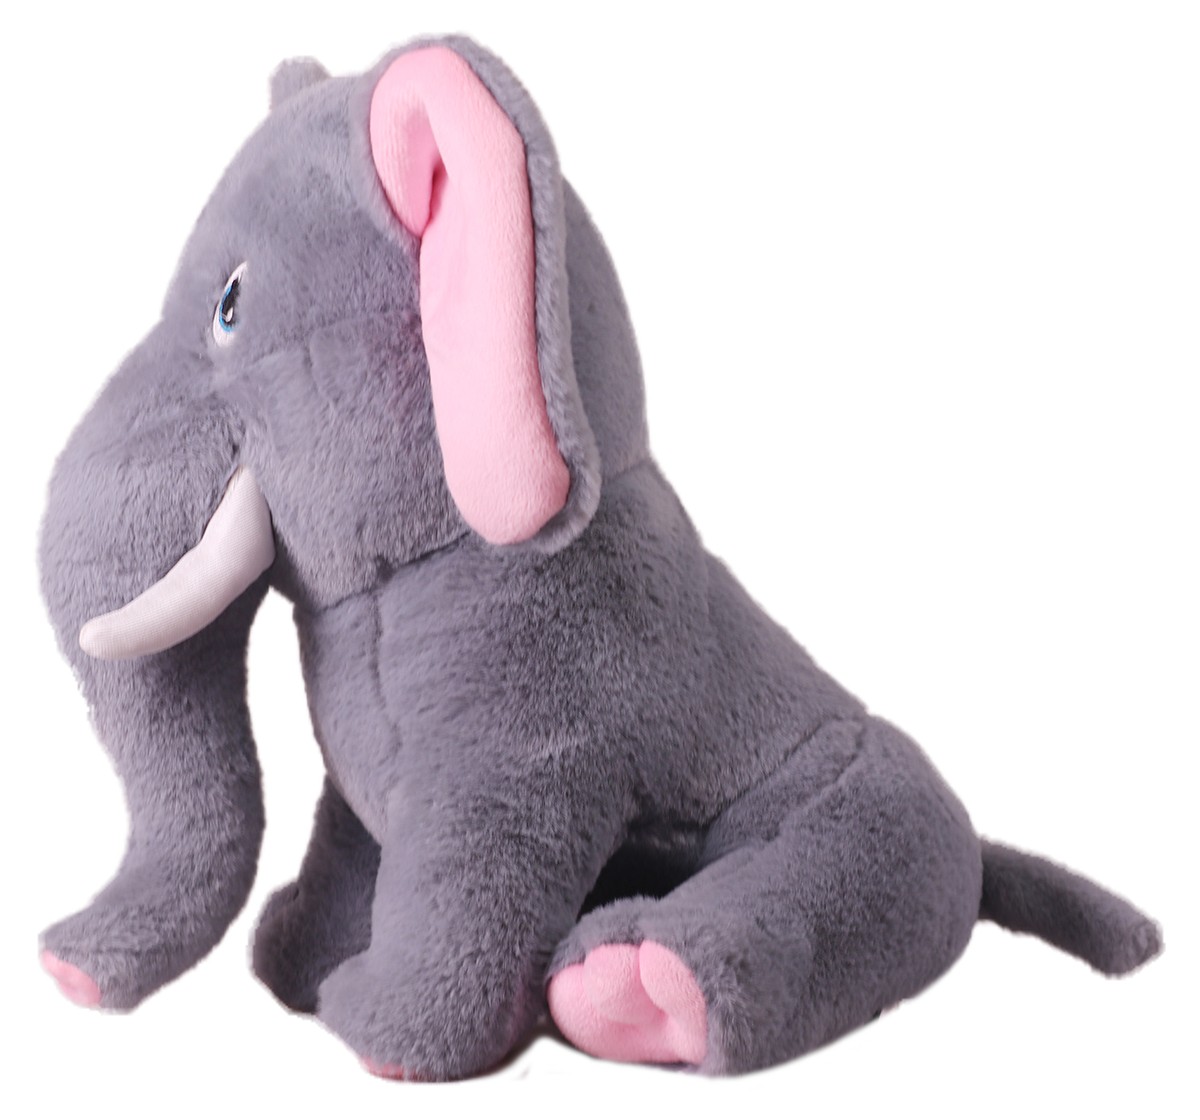 Mirada 32cm sitting elephant soft toy Multicolor 3Y+